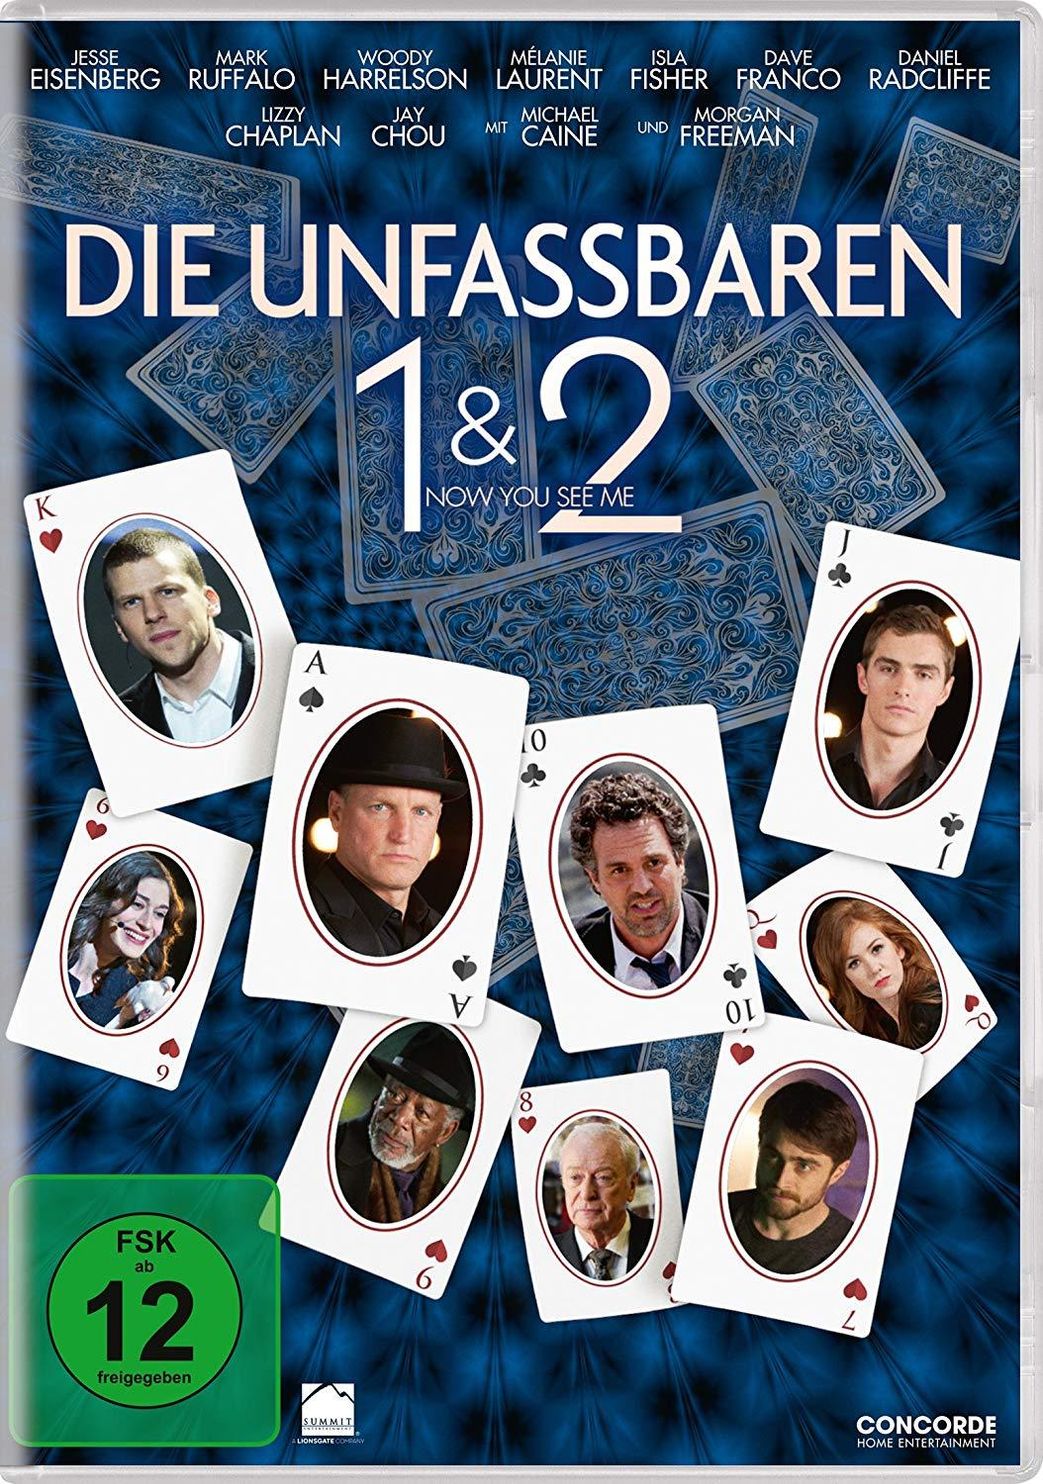 Die Unfassbaren - Now you see me 1 & 2 DVD | Weltbild.at